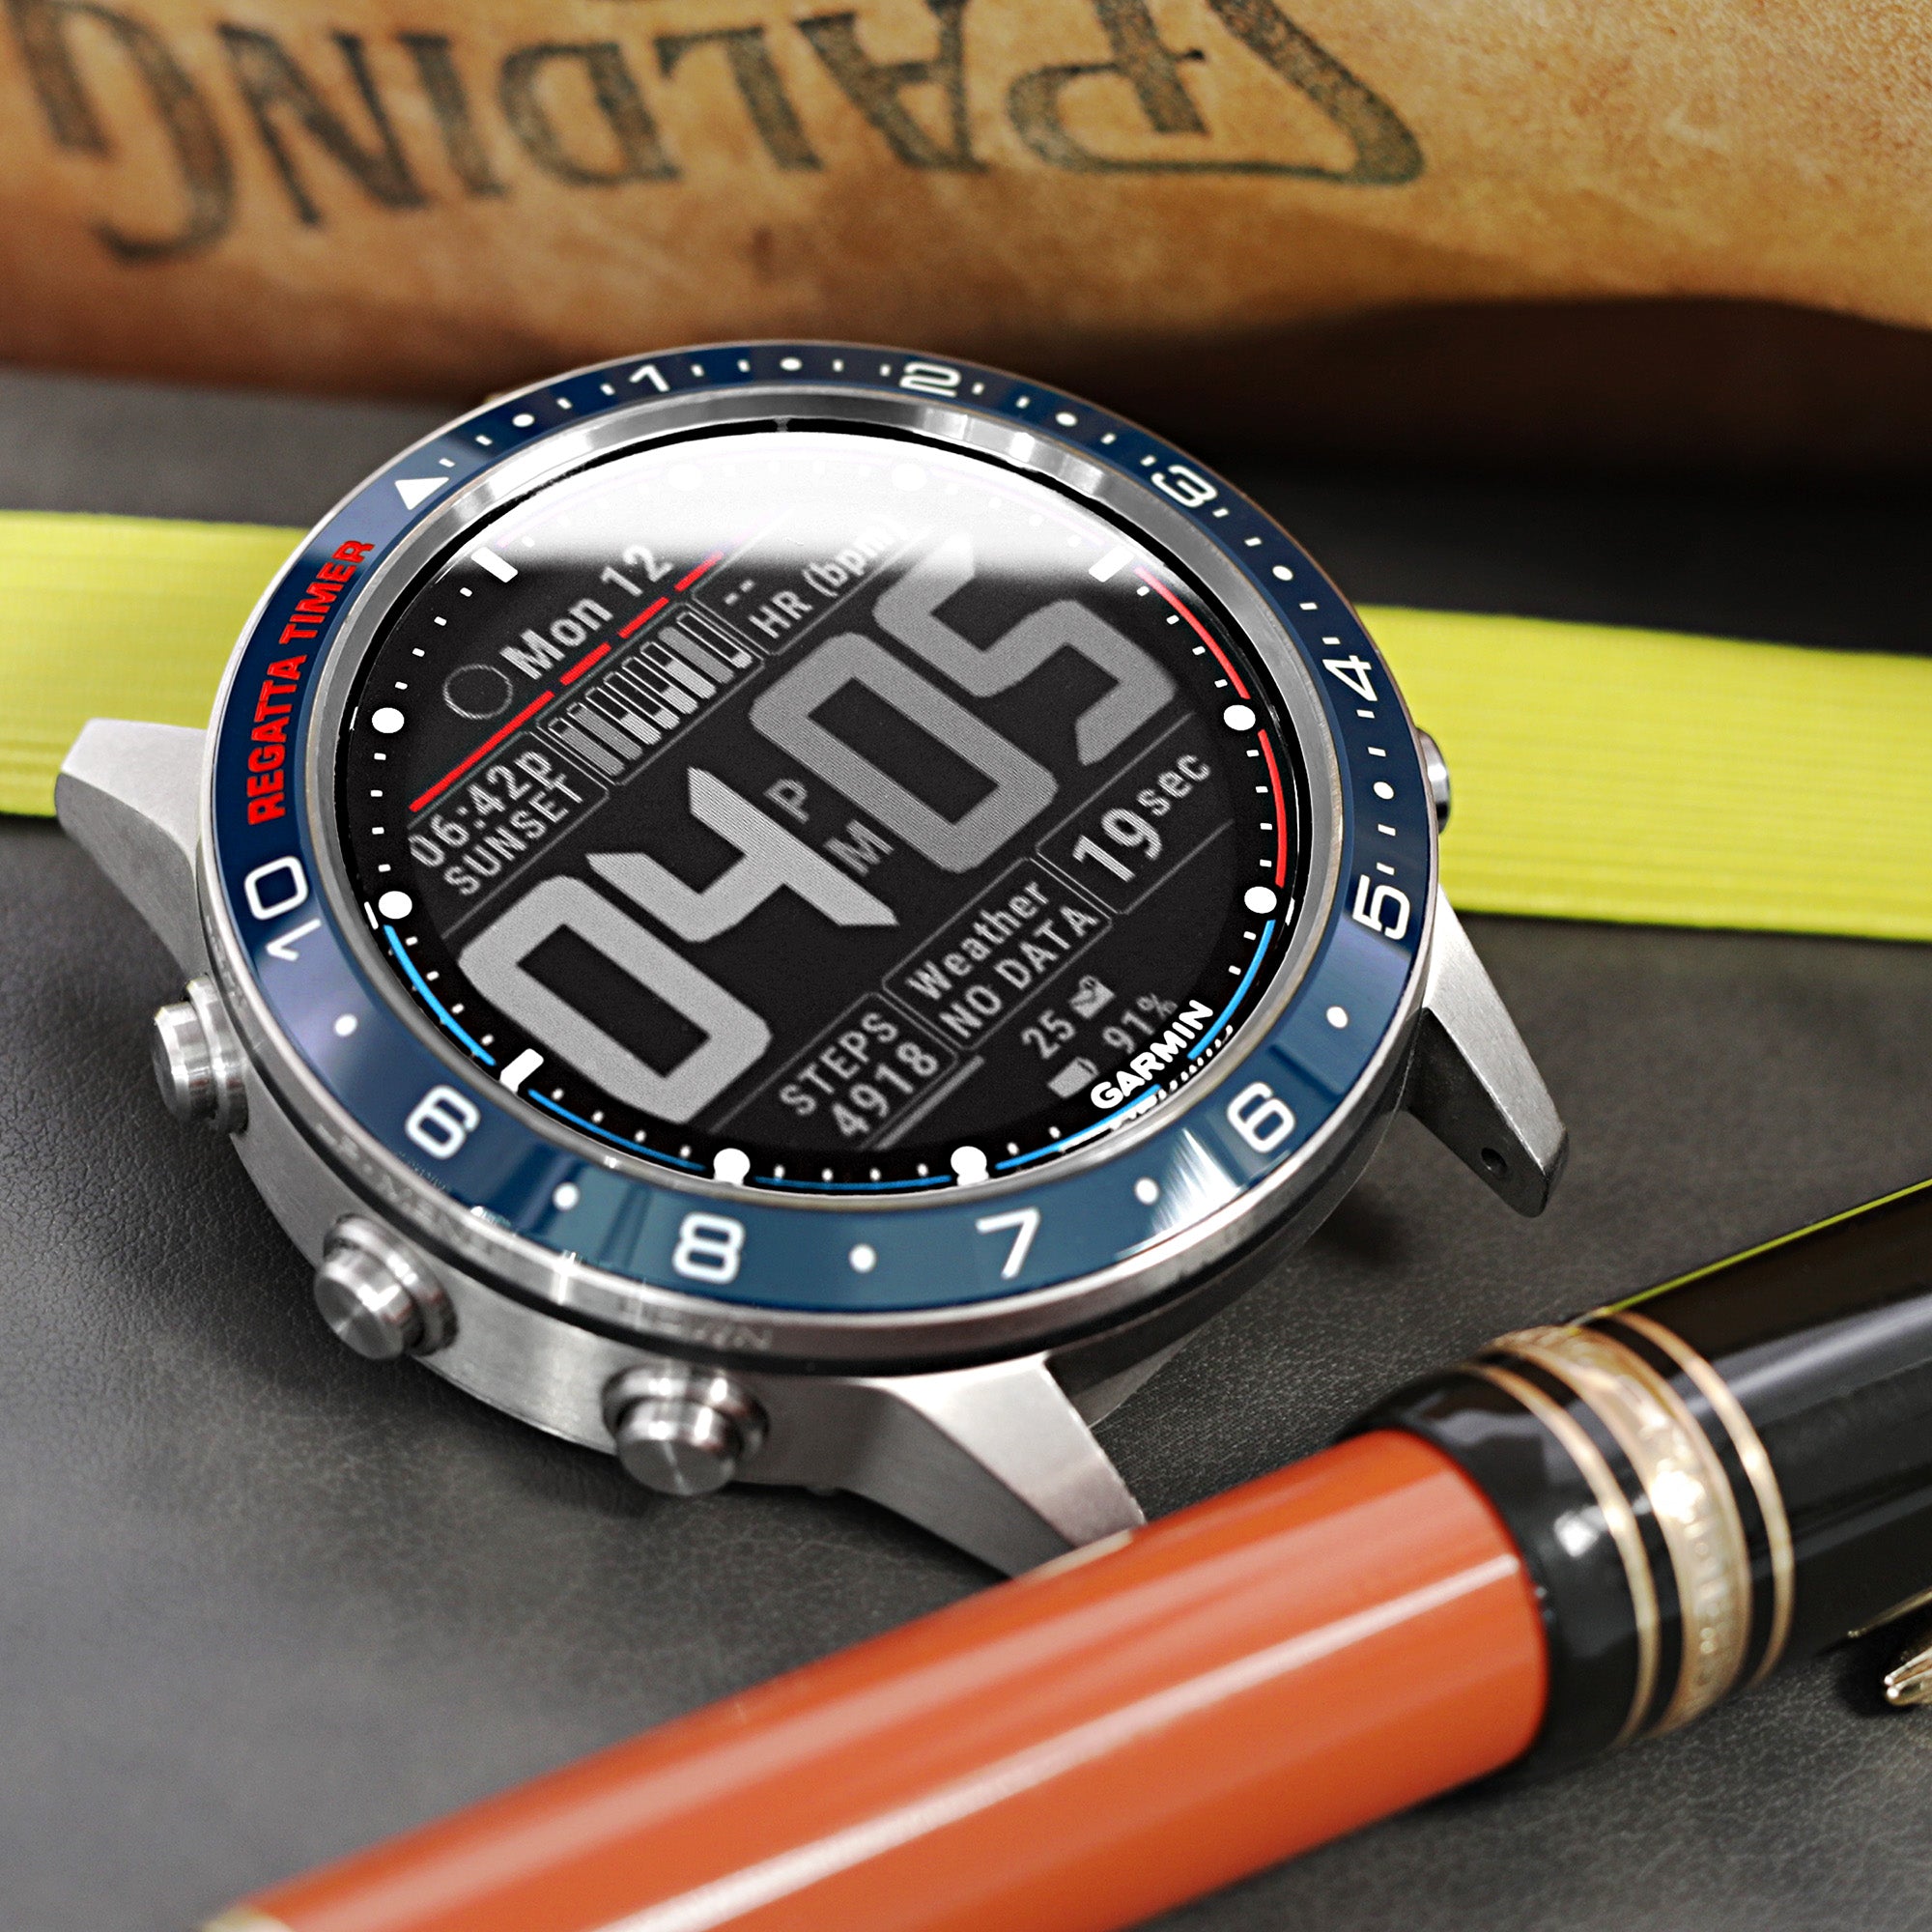 Garmin MARQ - an Undeniably Stylish Sporty Smartwatch